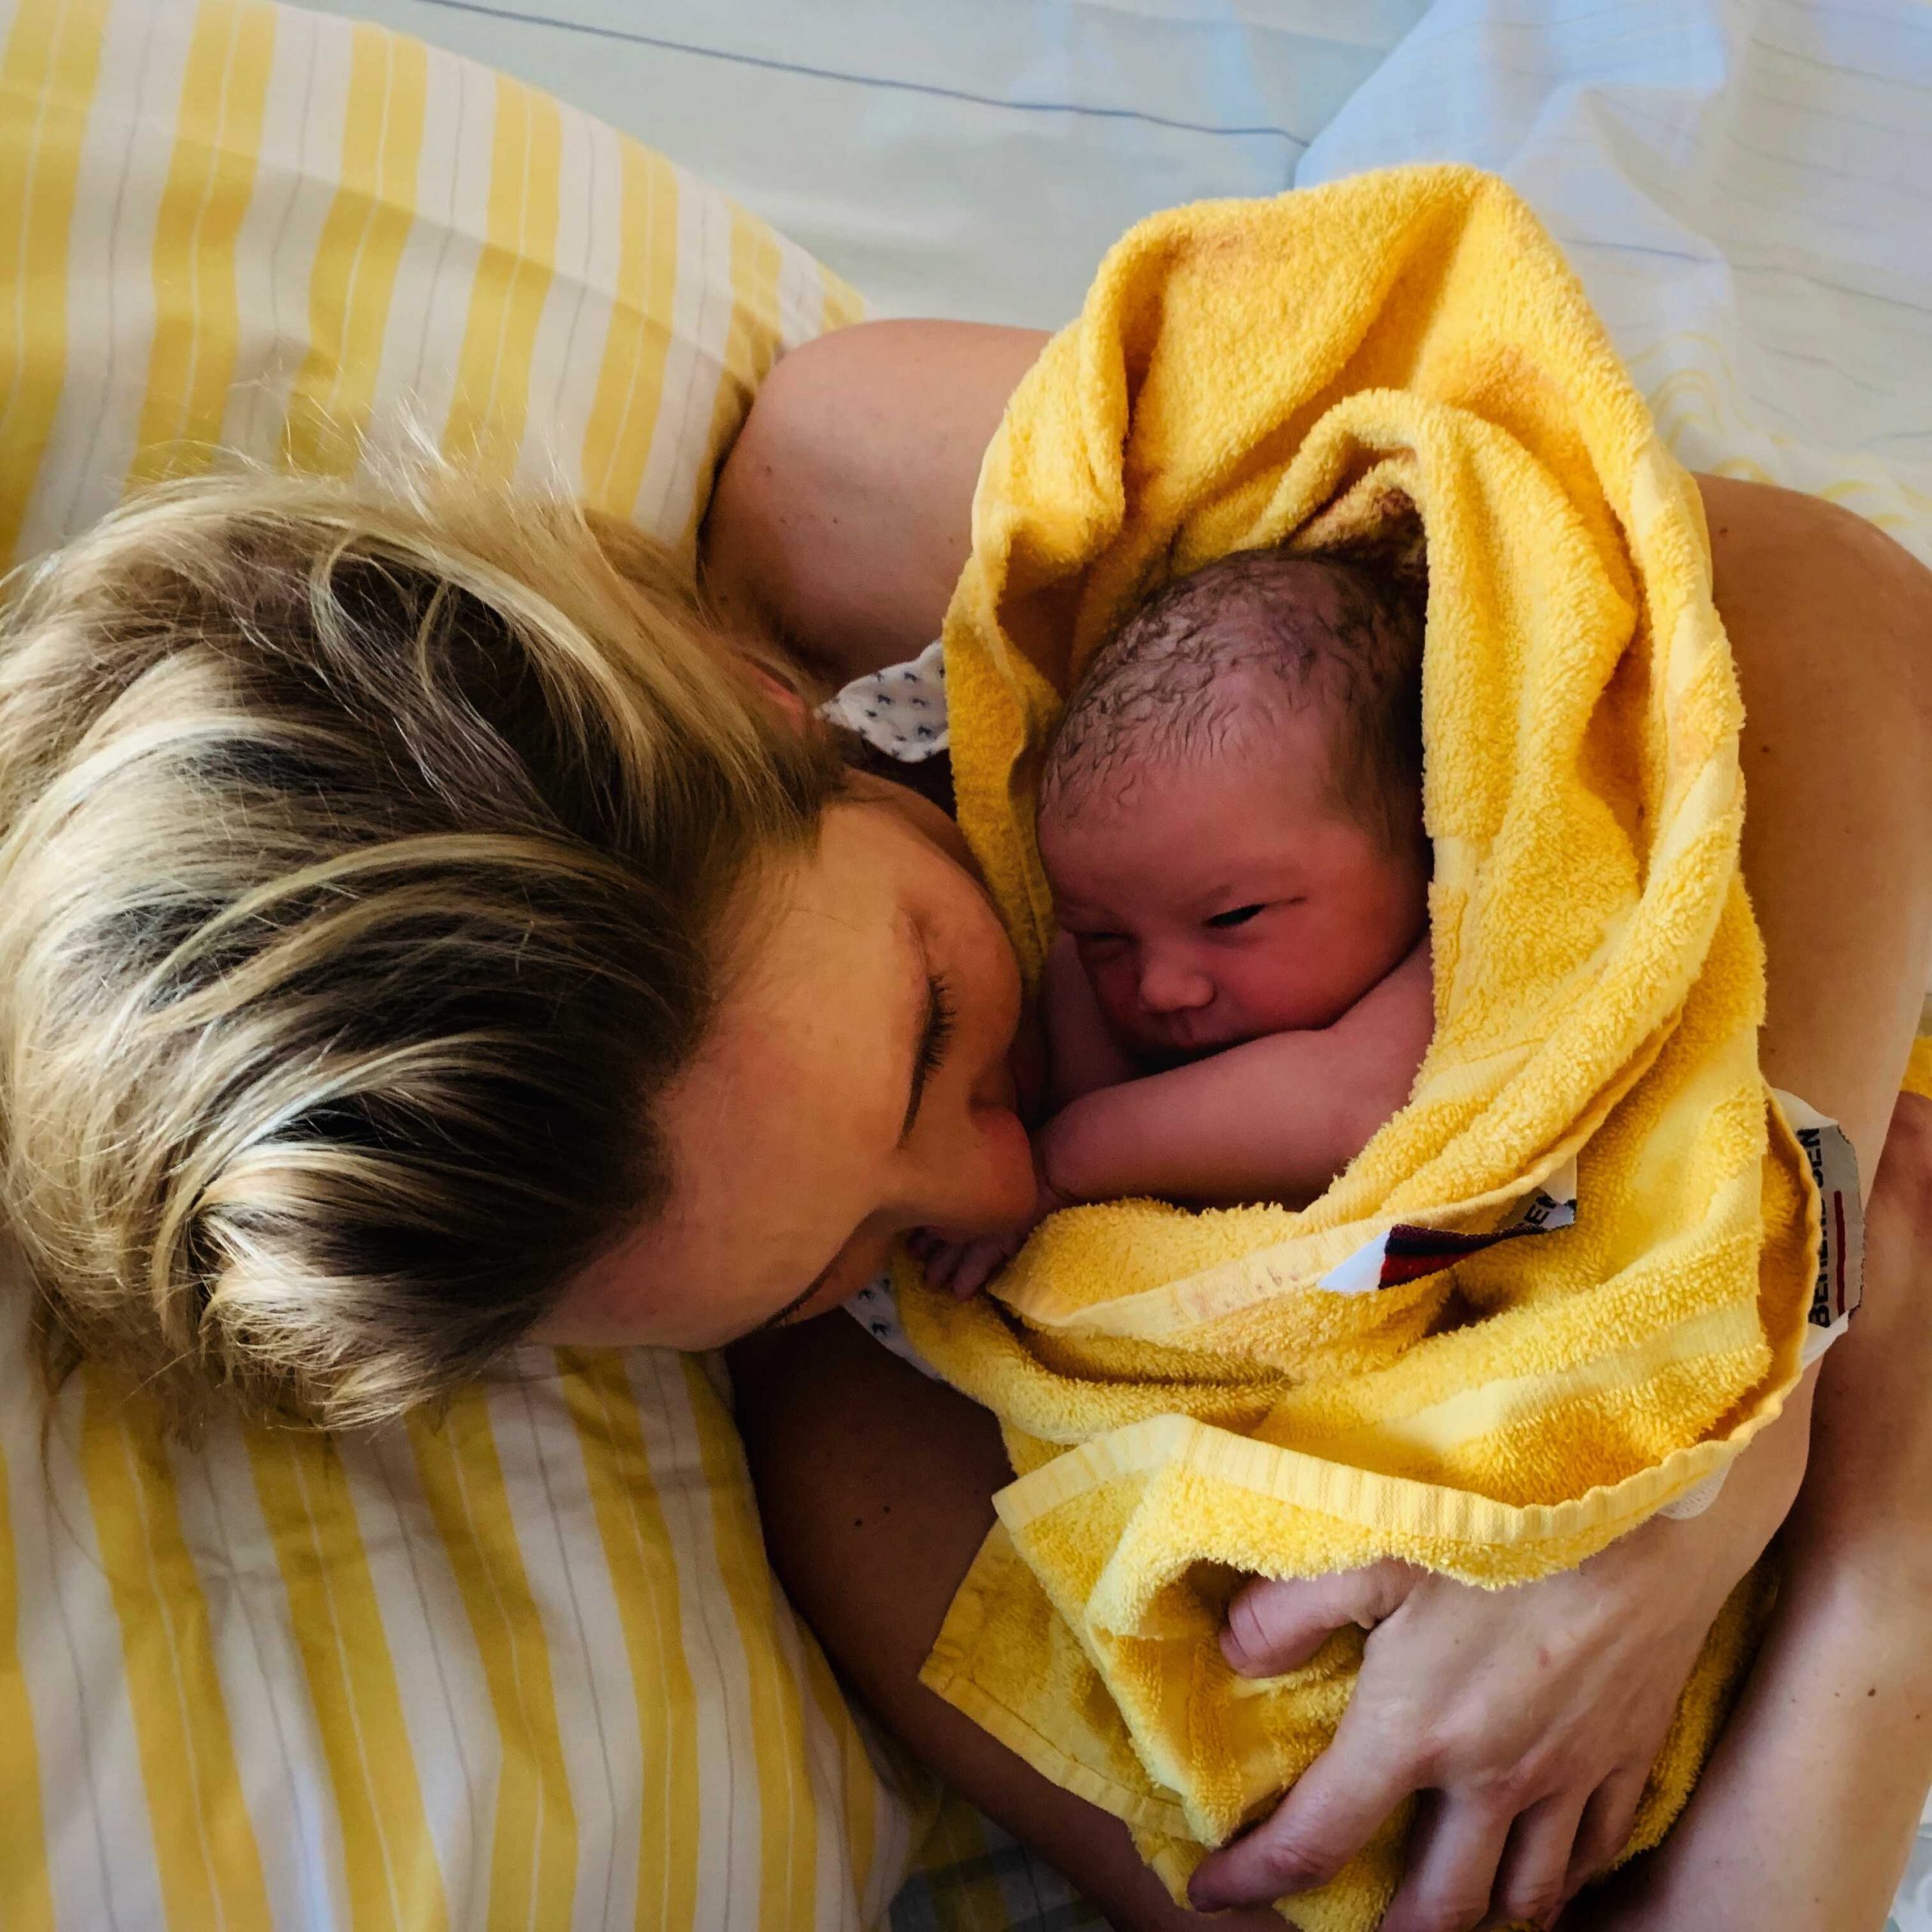 Ingrid Dach - 3 porody - porodnice, porod do vody v Dánsku, ambulantní porod